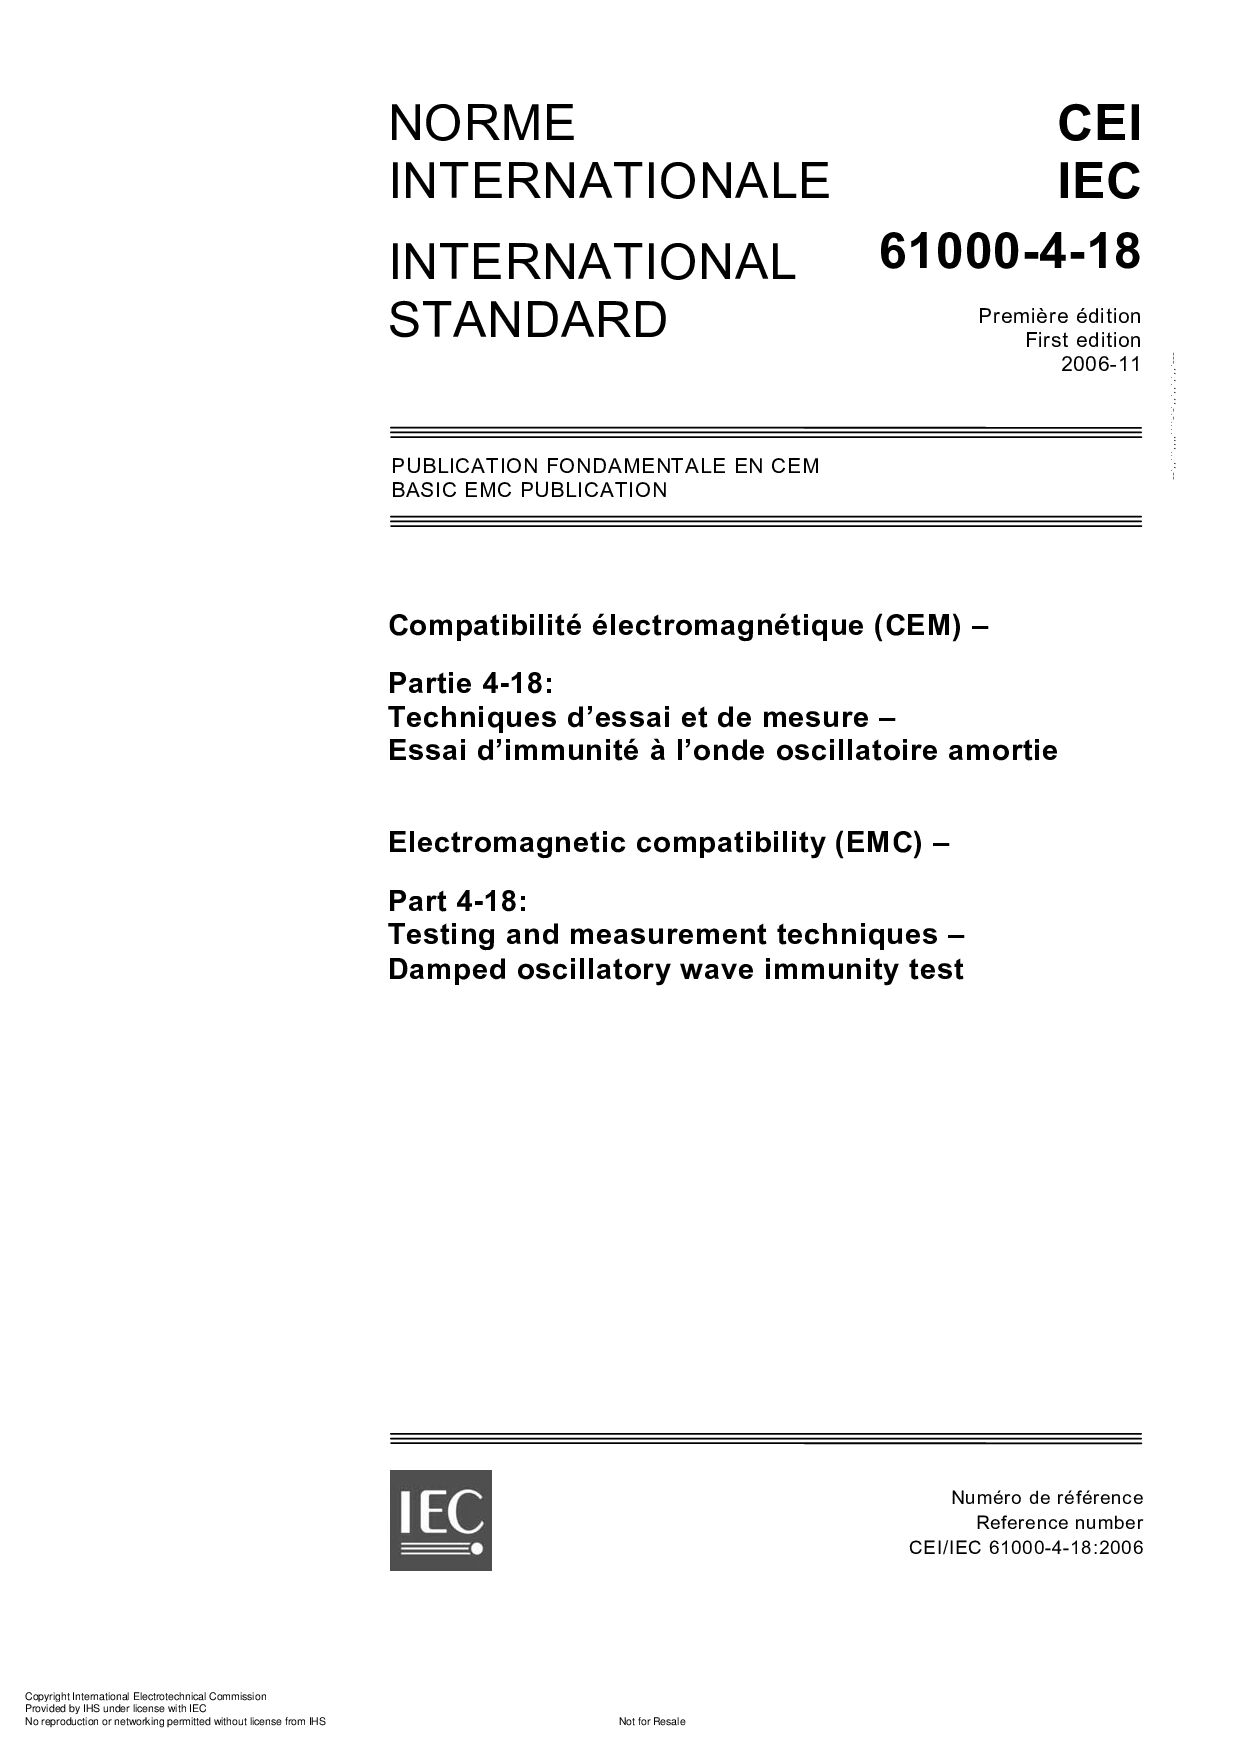 IEC 61000-4-18:2006